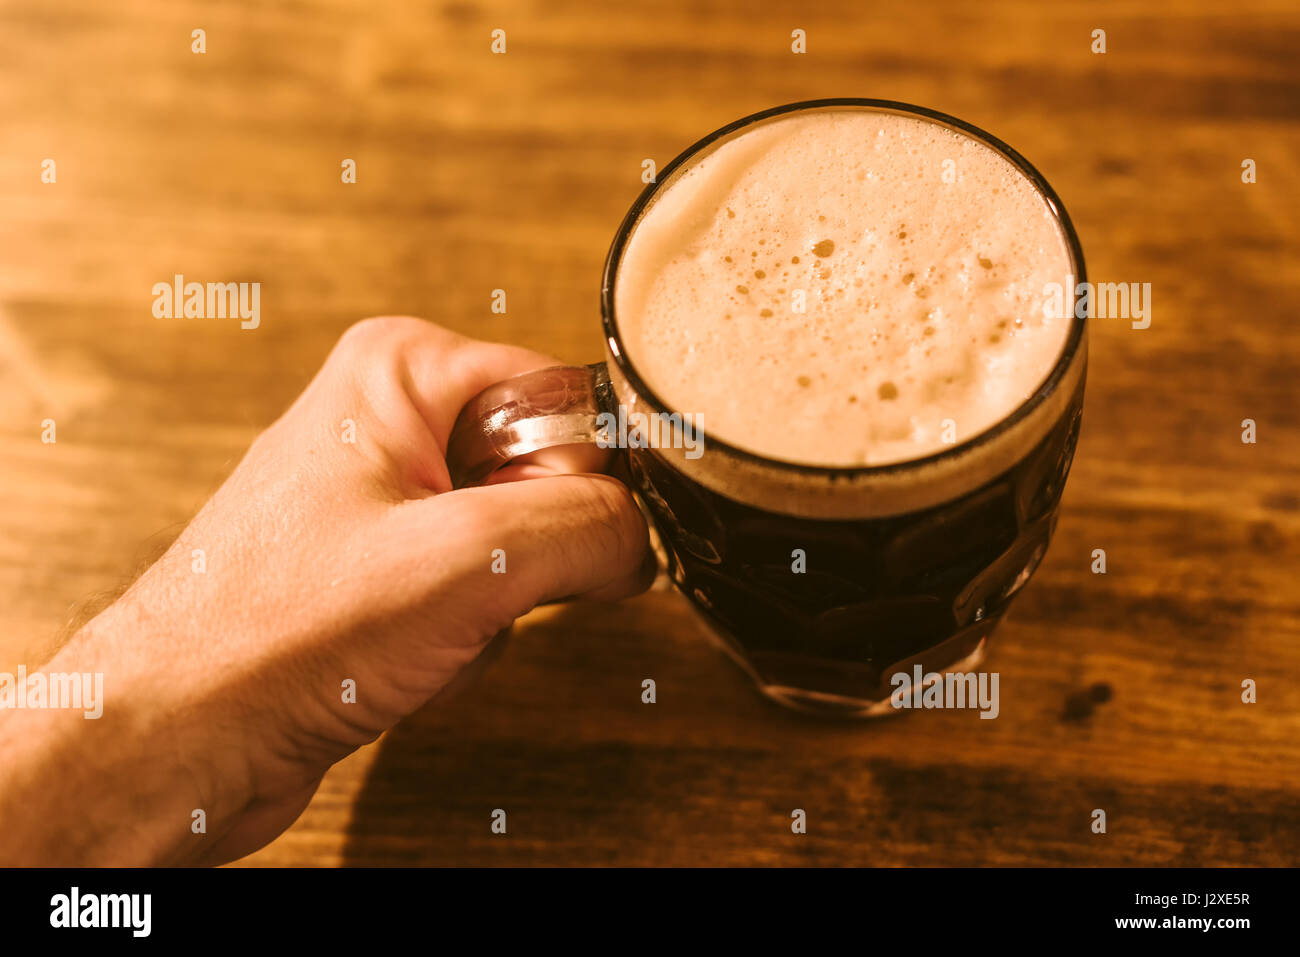 Menschen trinken dunkles Bier im britischen Grübchen Glaskrug Bier am Stehtisch Stockfoto